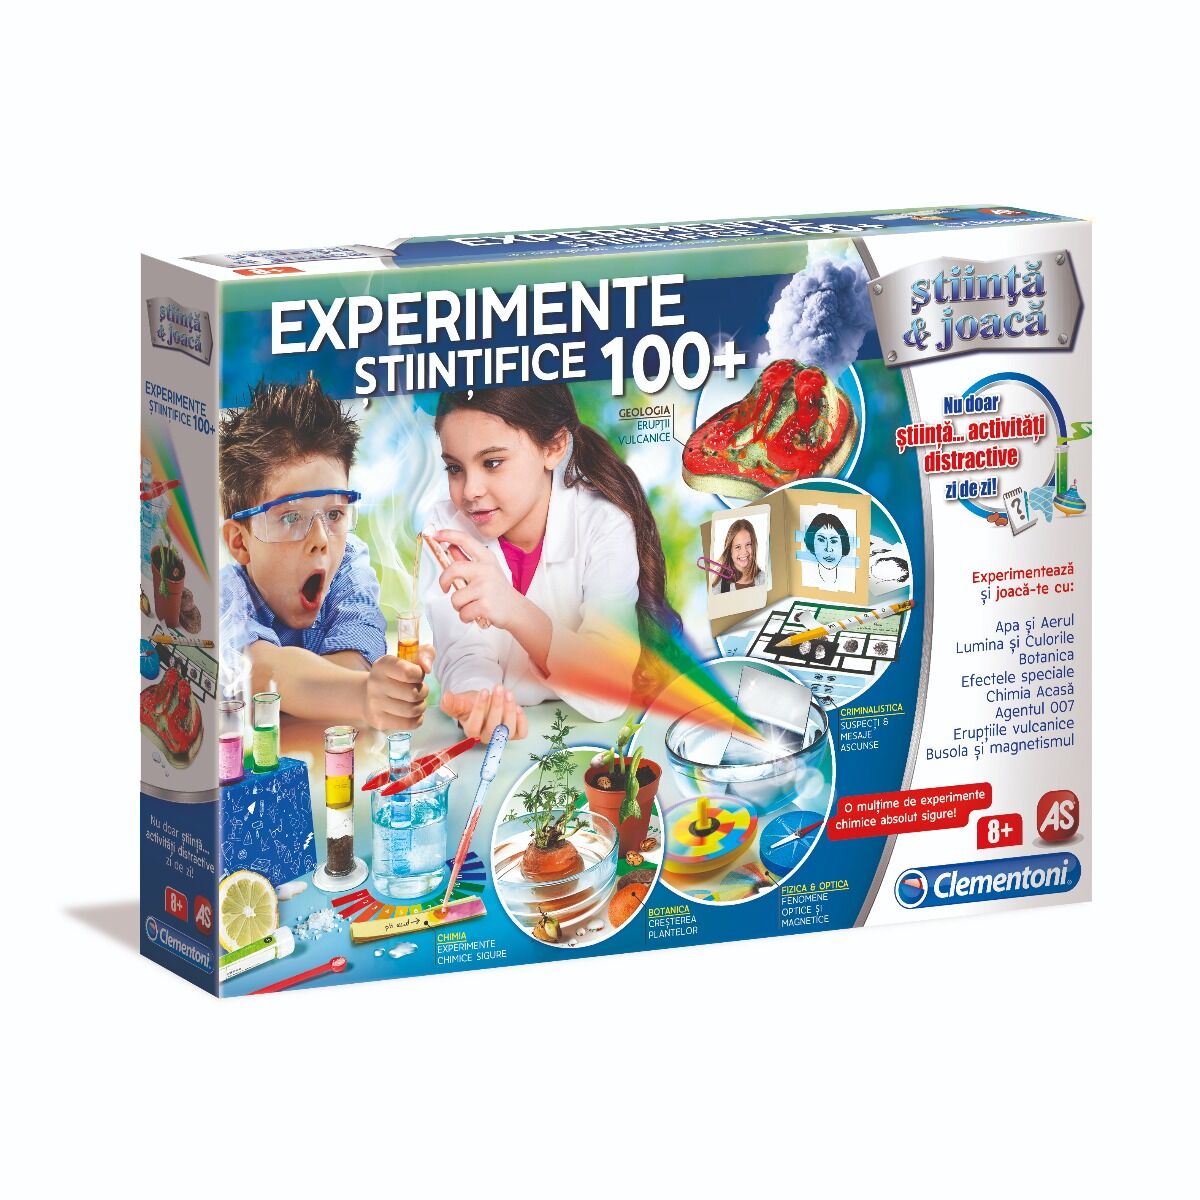 100 Experimente Stiintifice - Stiinta & Joaca, Clementoni